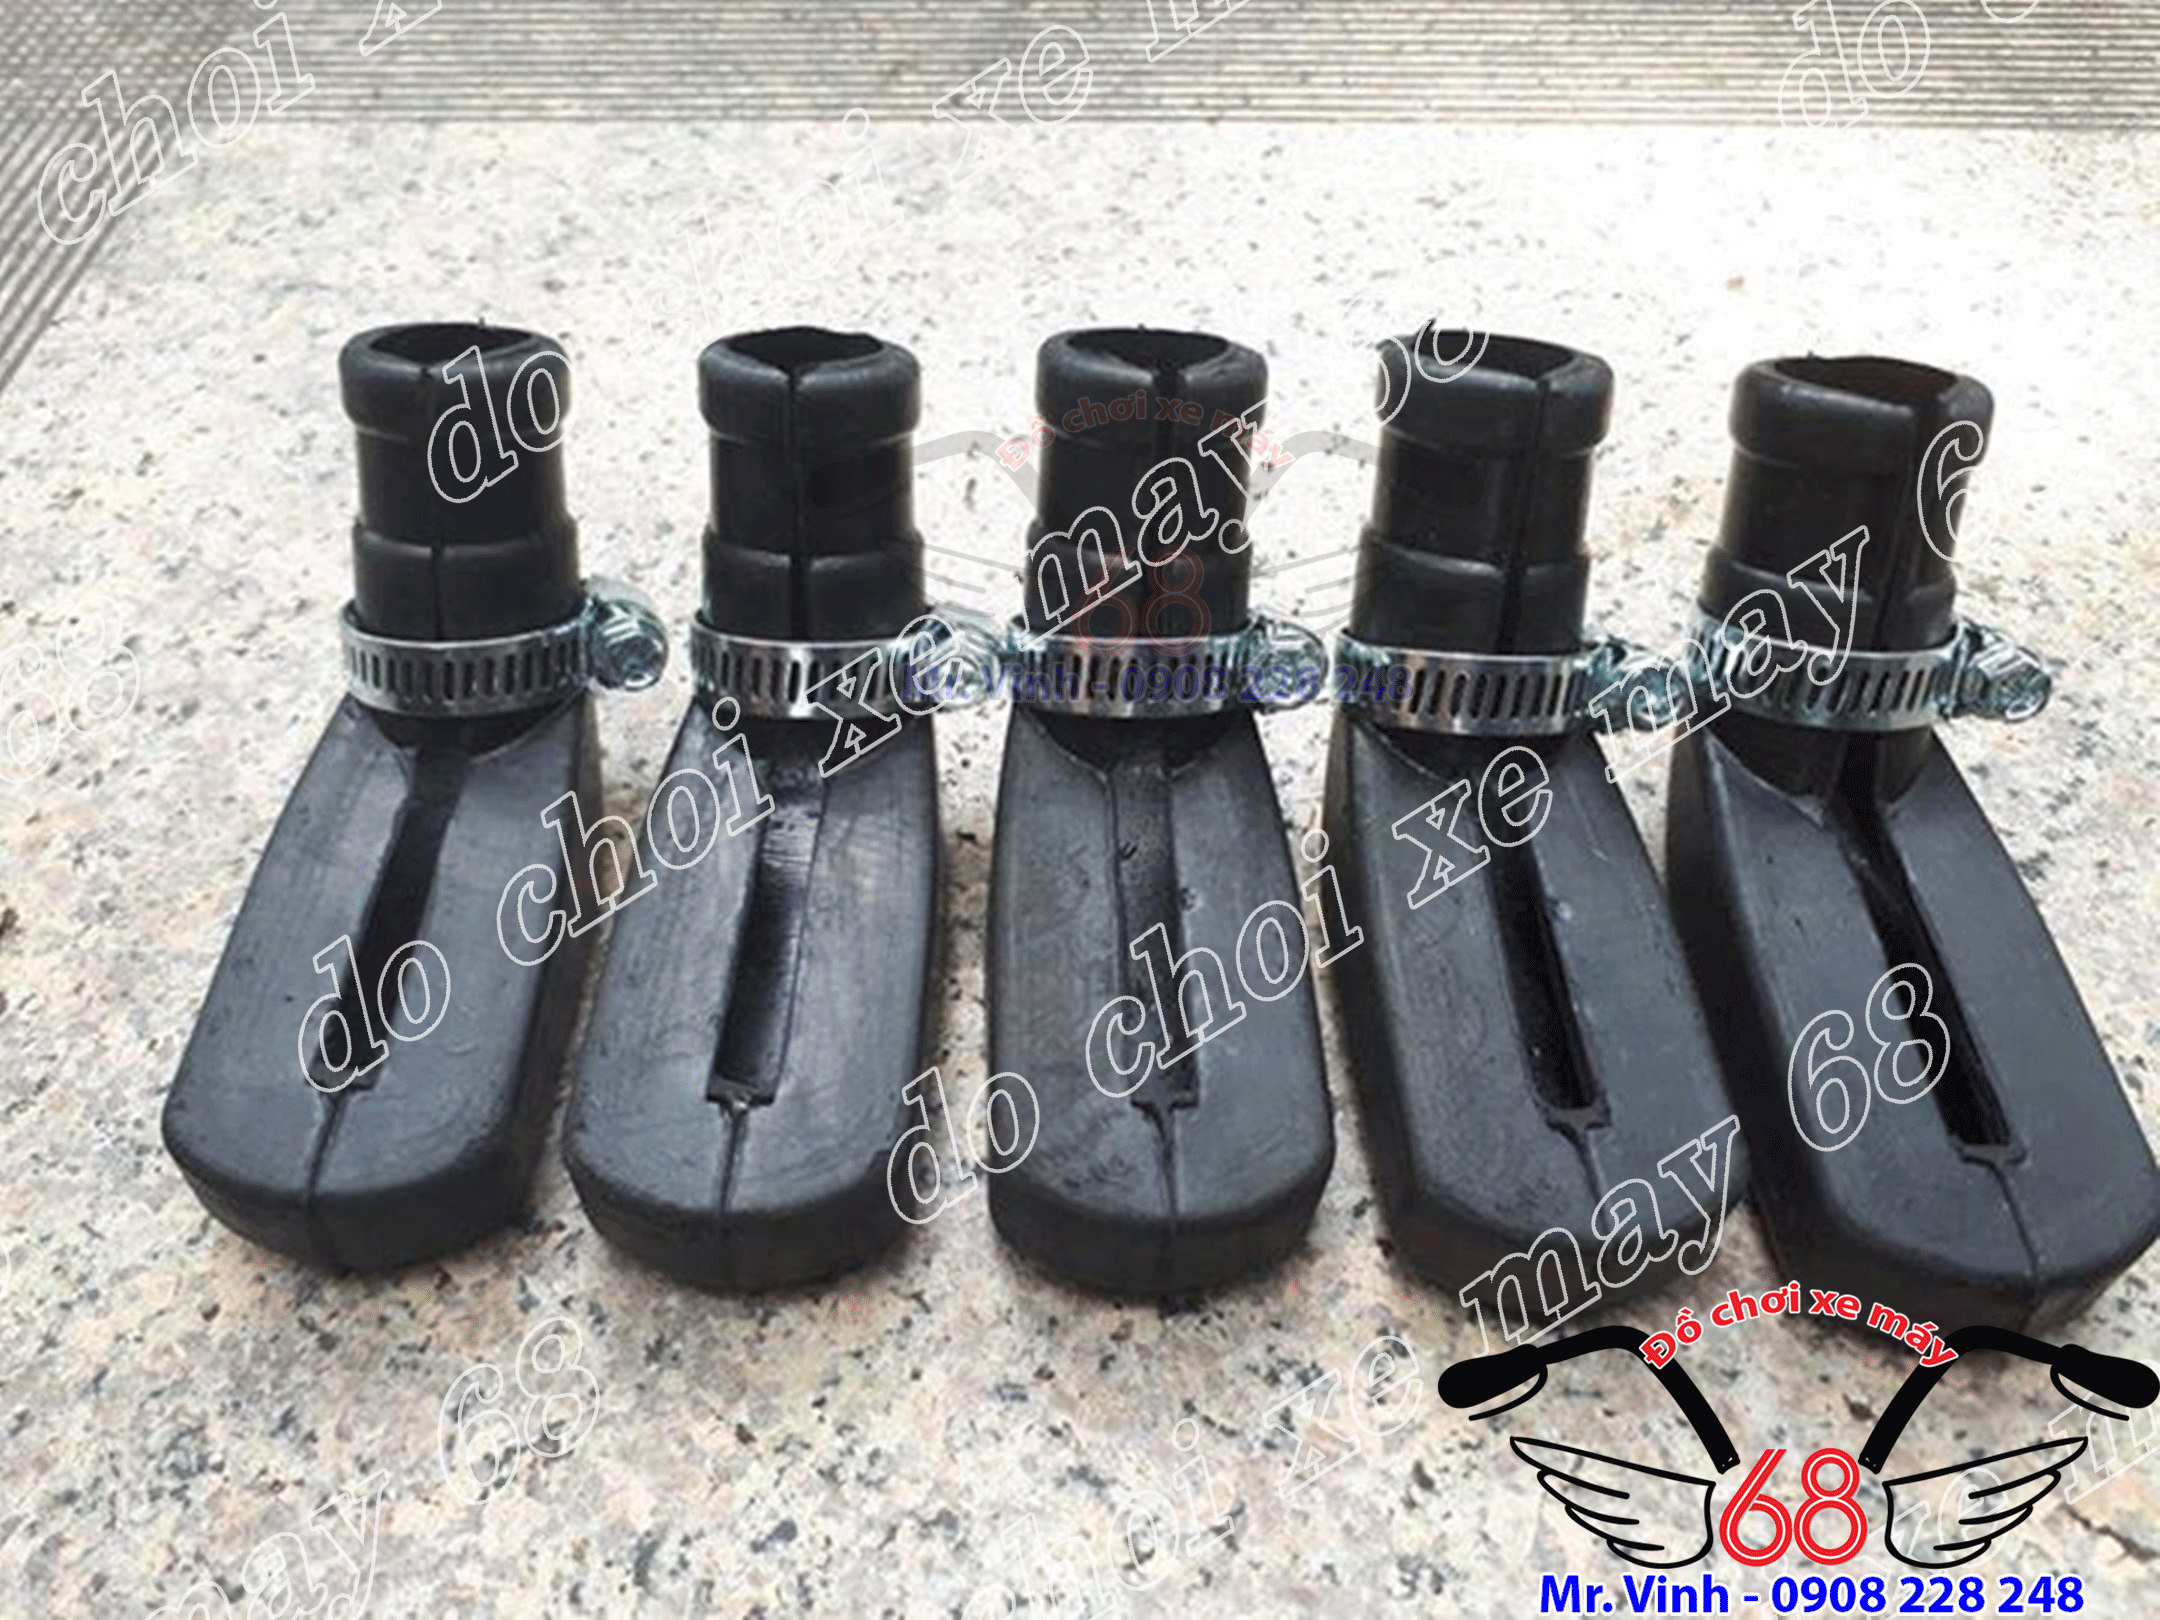 Hình ảnh: Lót chân chống cao su giá rẻ tại shop 68 TPHCM